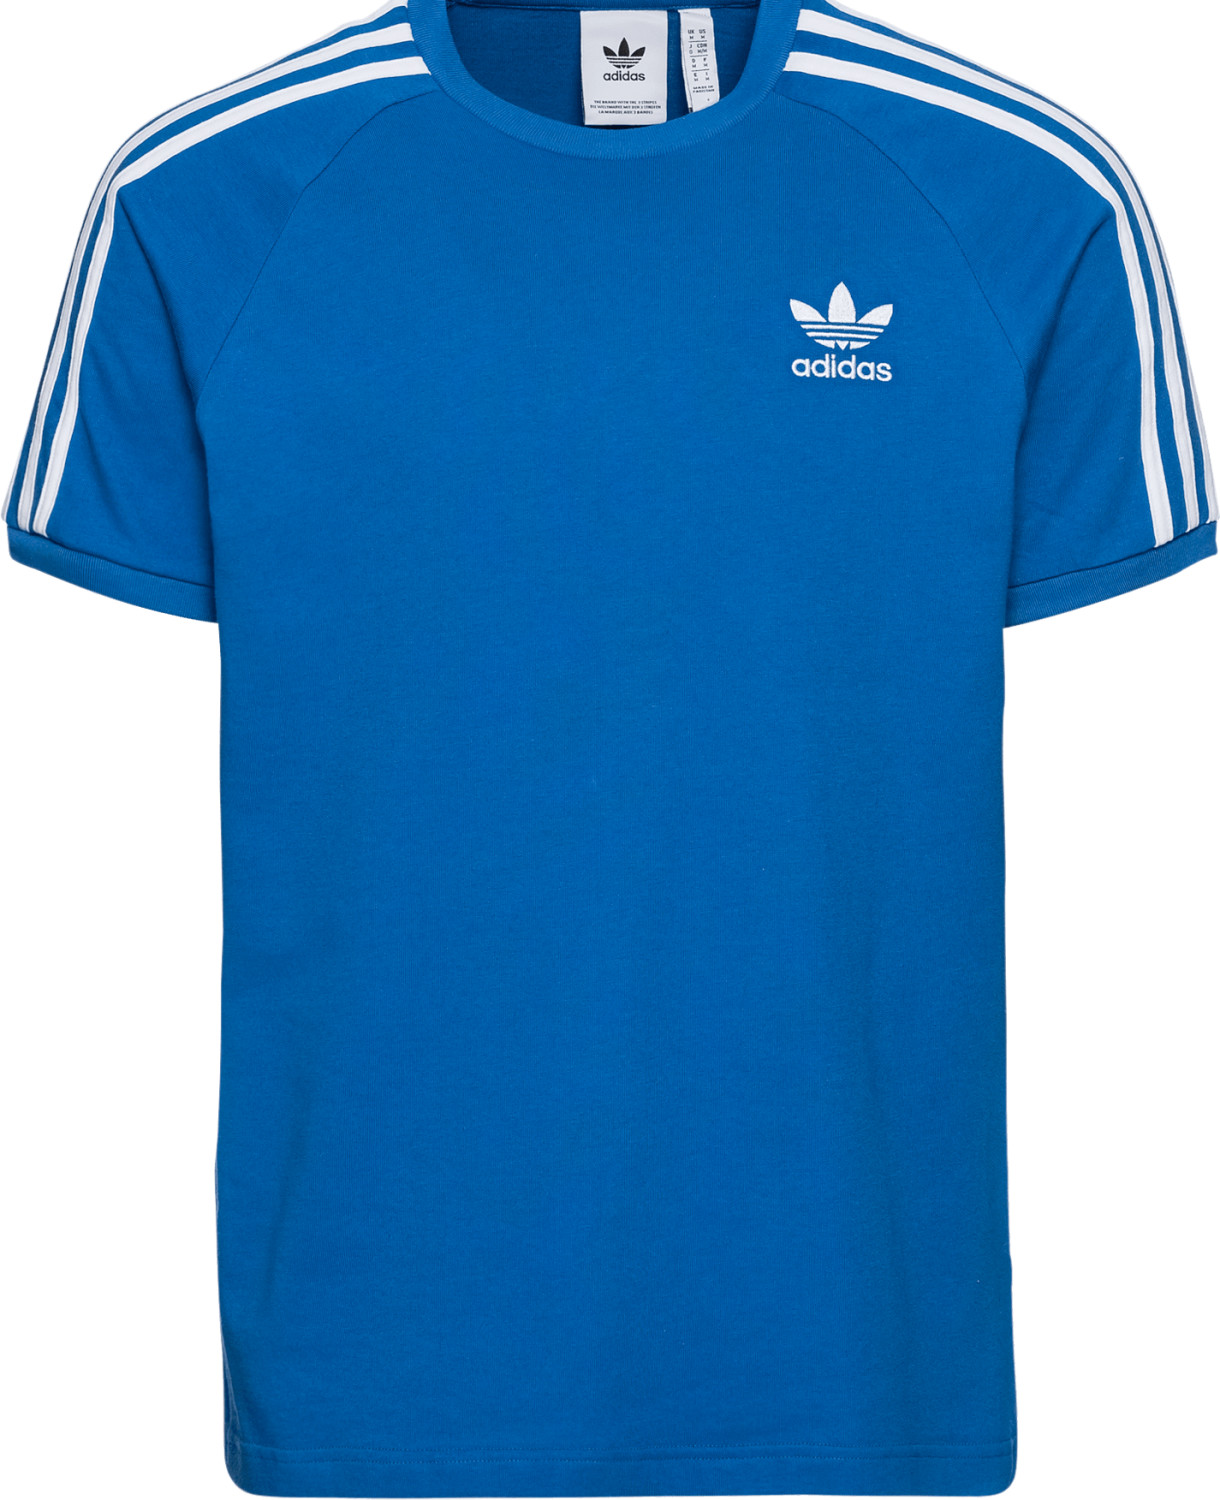 Buy Adidas 3-Stripes T-Shirt Bluebird from £10.00 (Today) – Best Deals ...